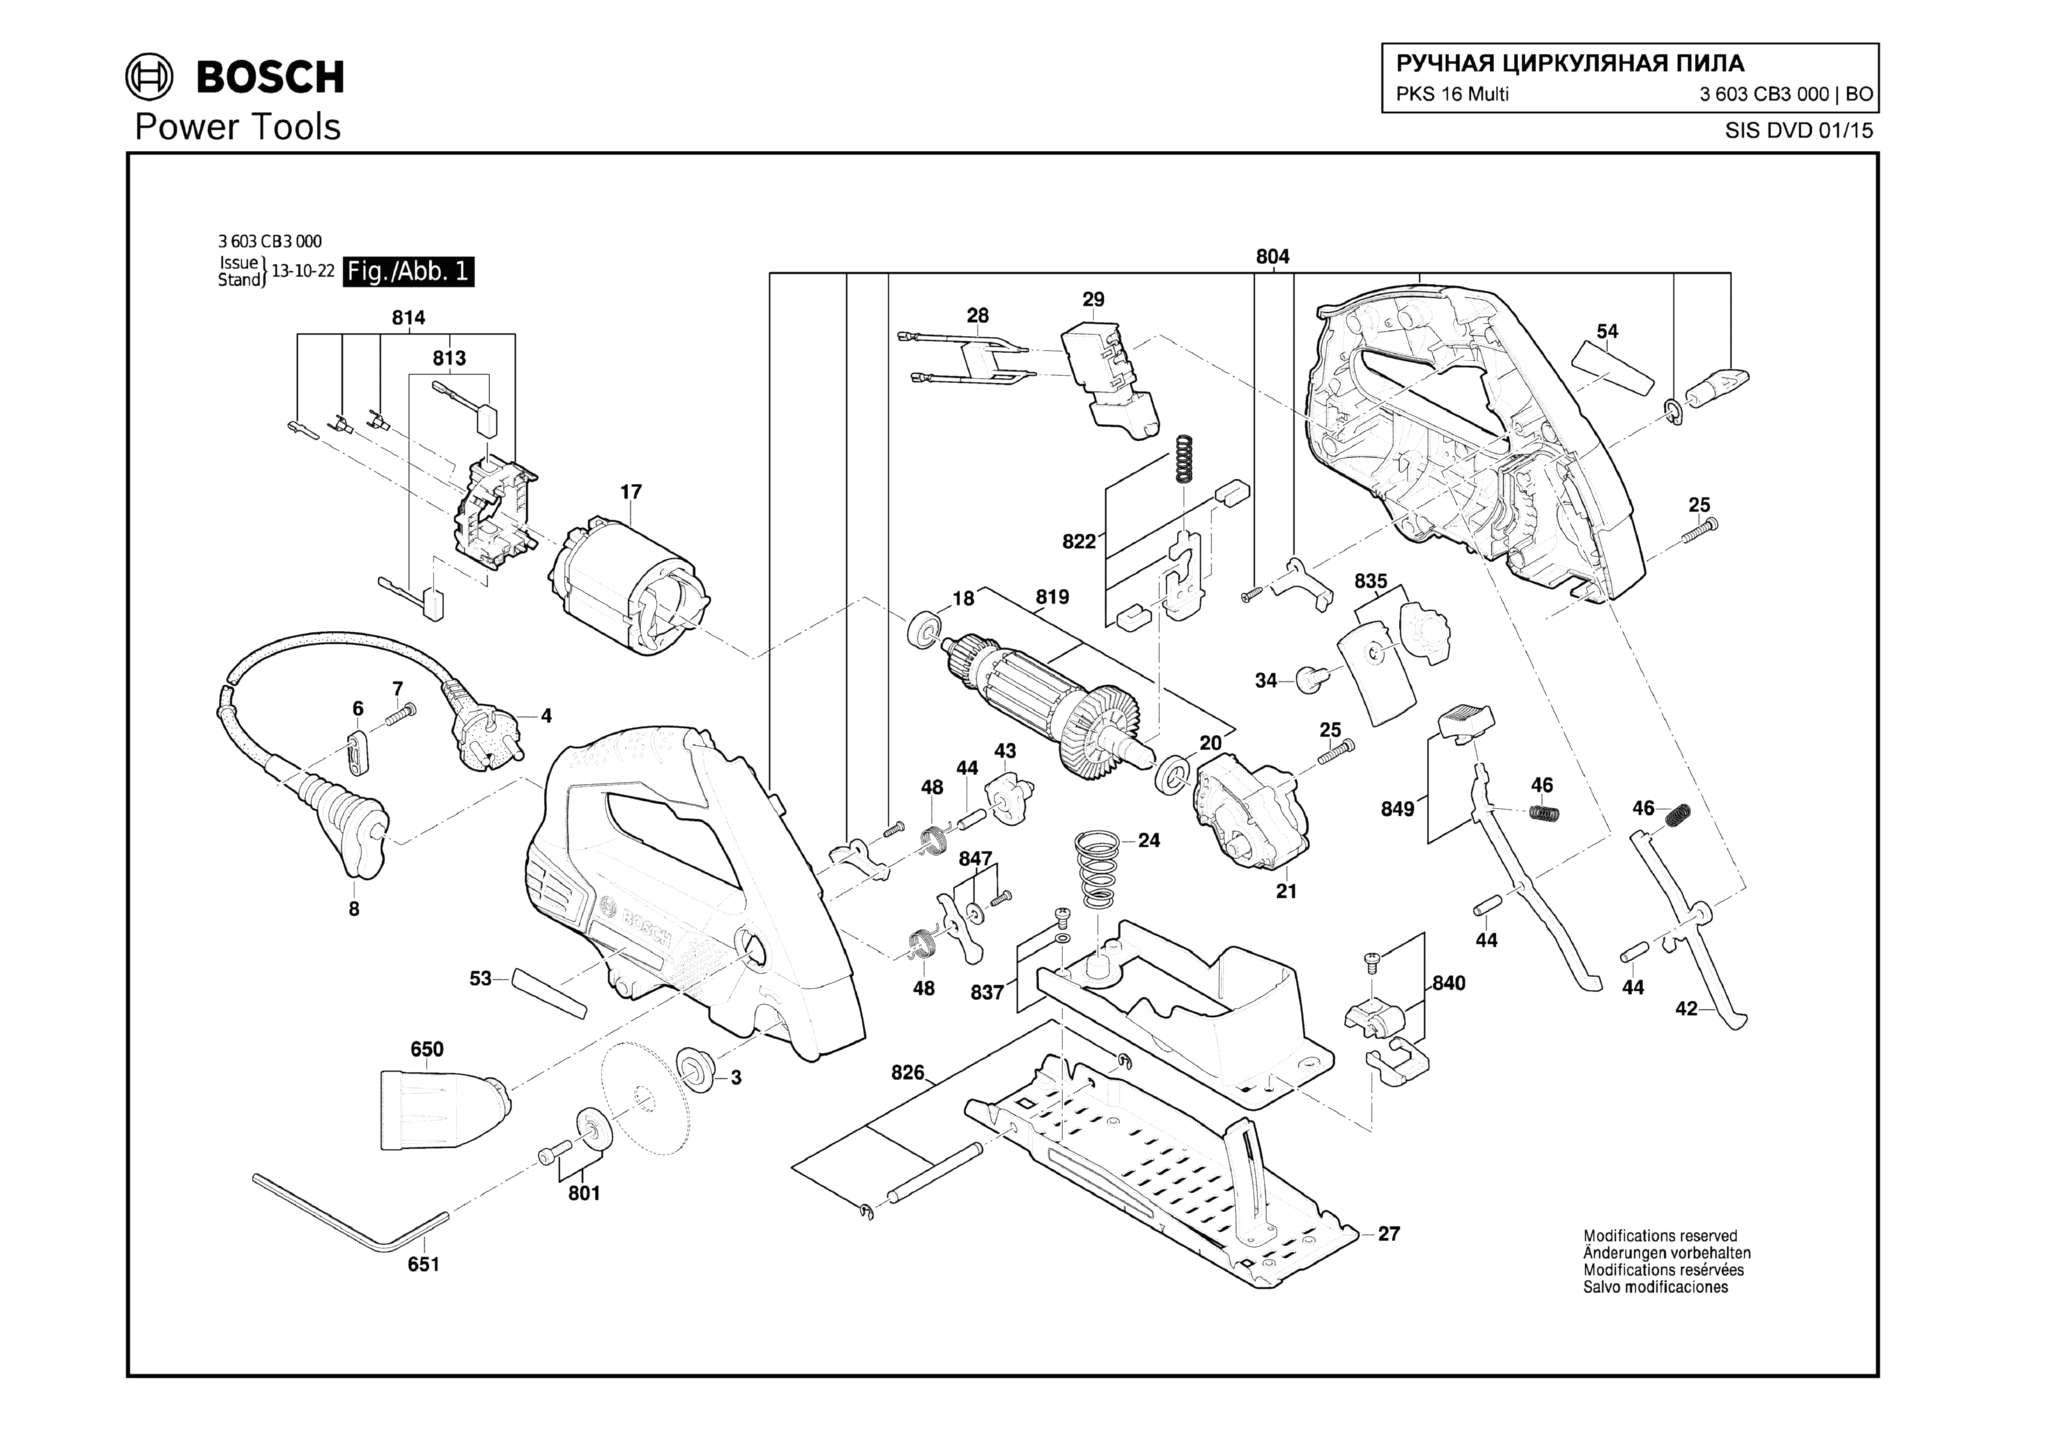 Запчасти, схема и деталировка Bosch PKS 16 MULTI (ТИП 3603CB3000)